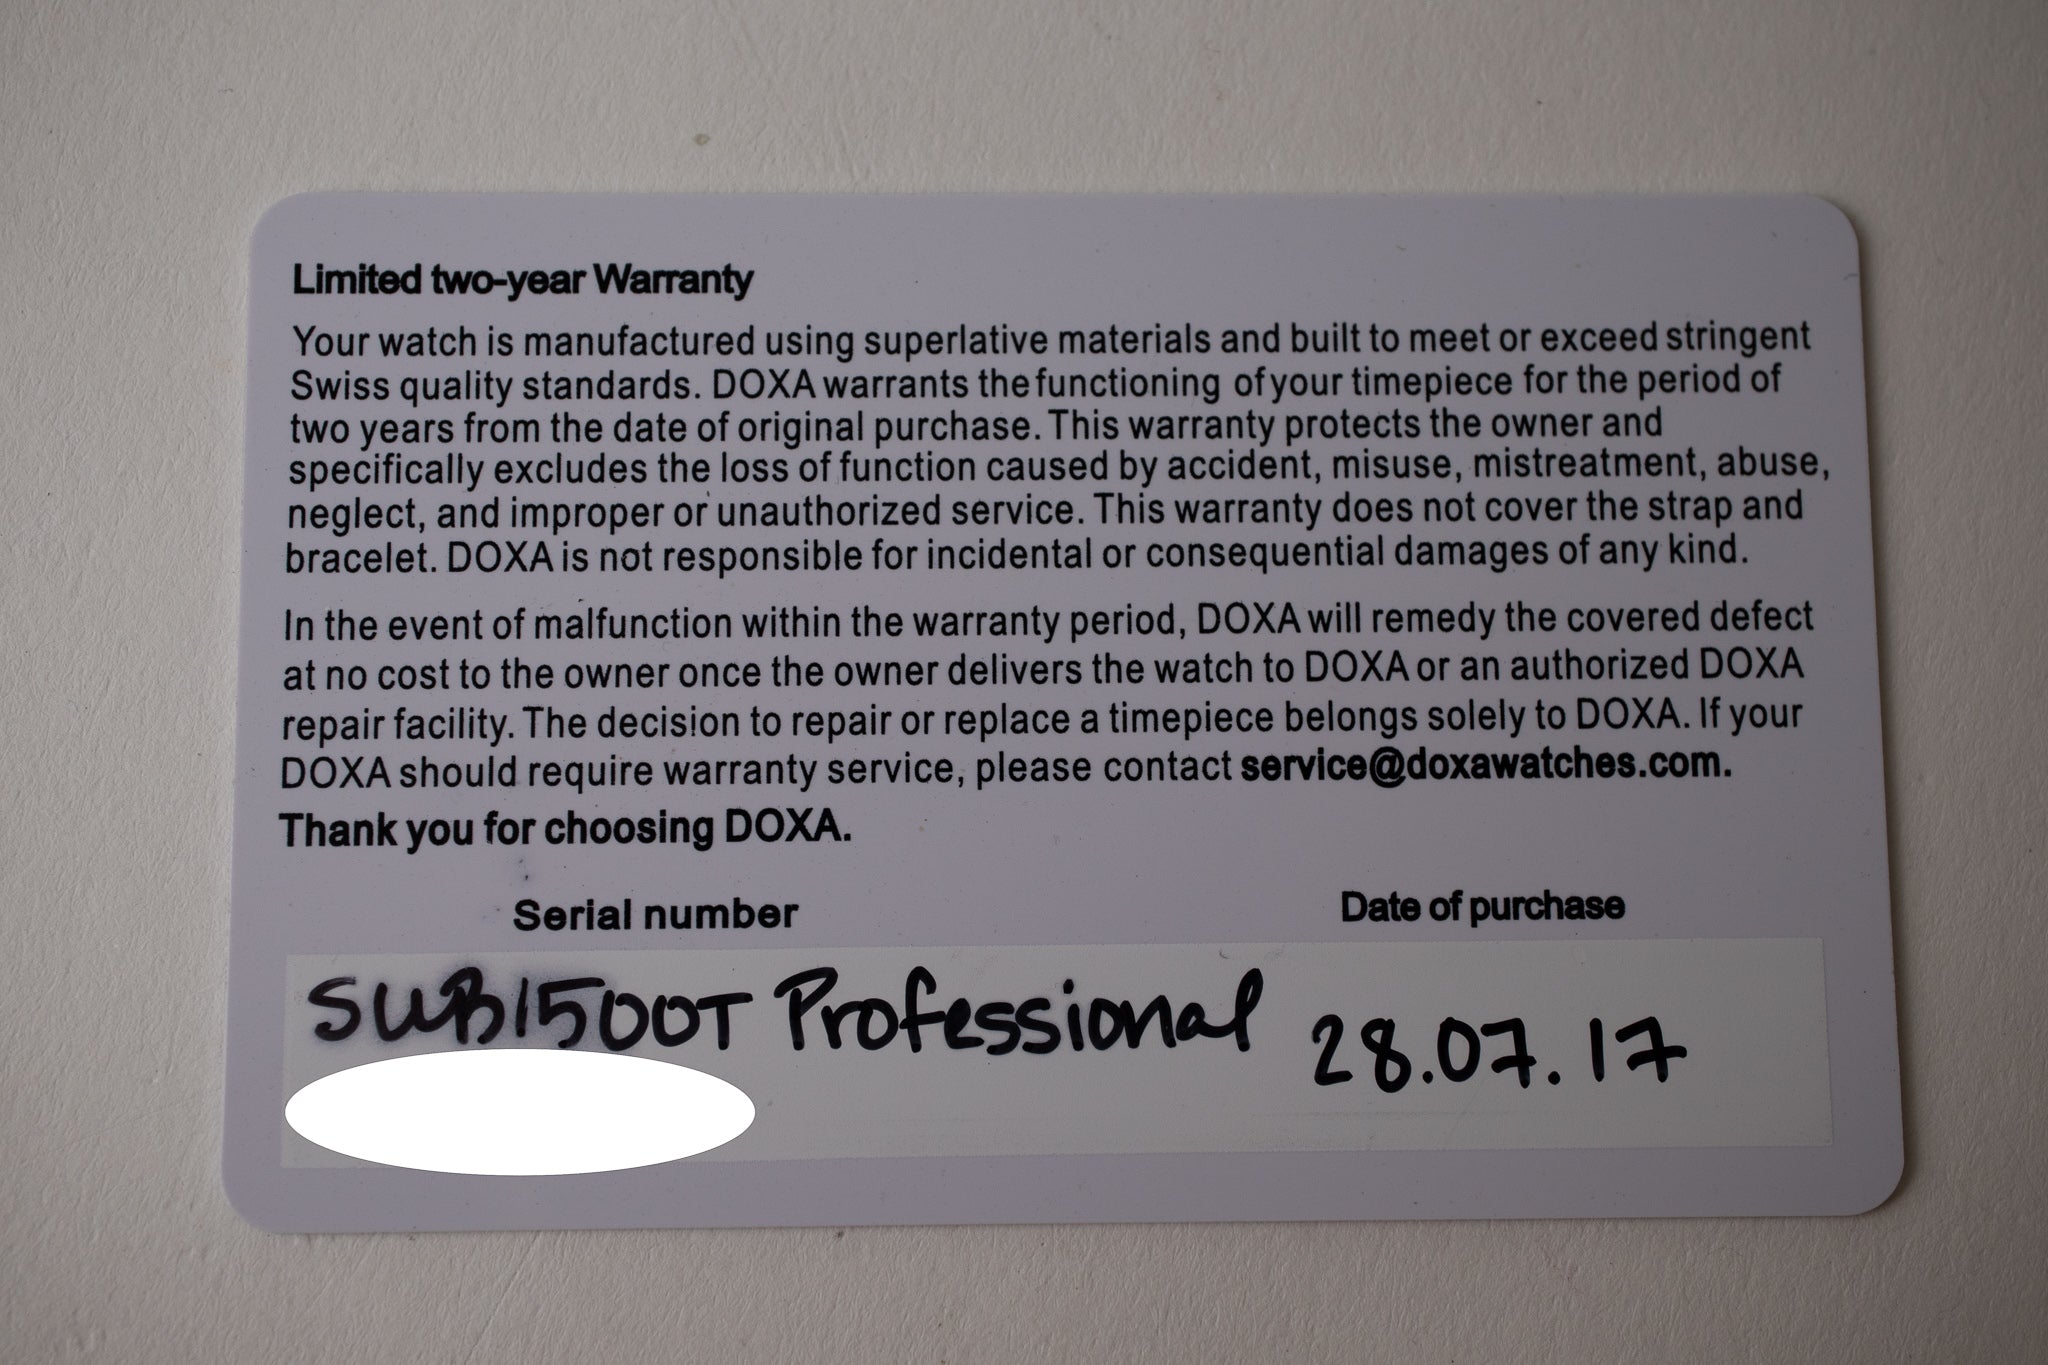 Doxa Sub 1500T Professional